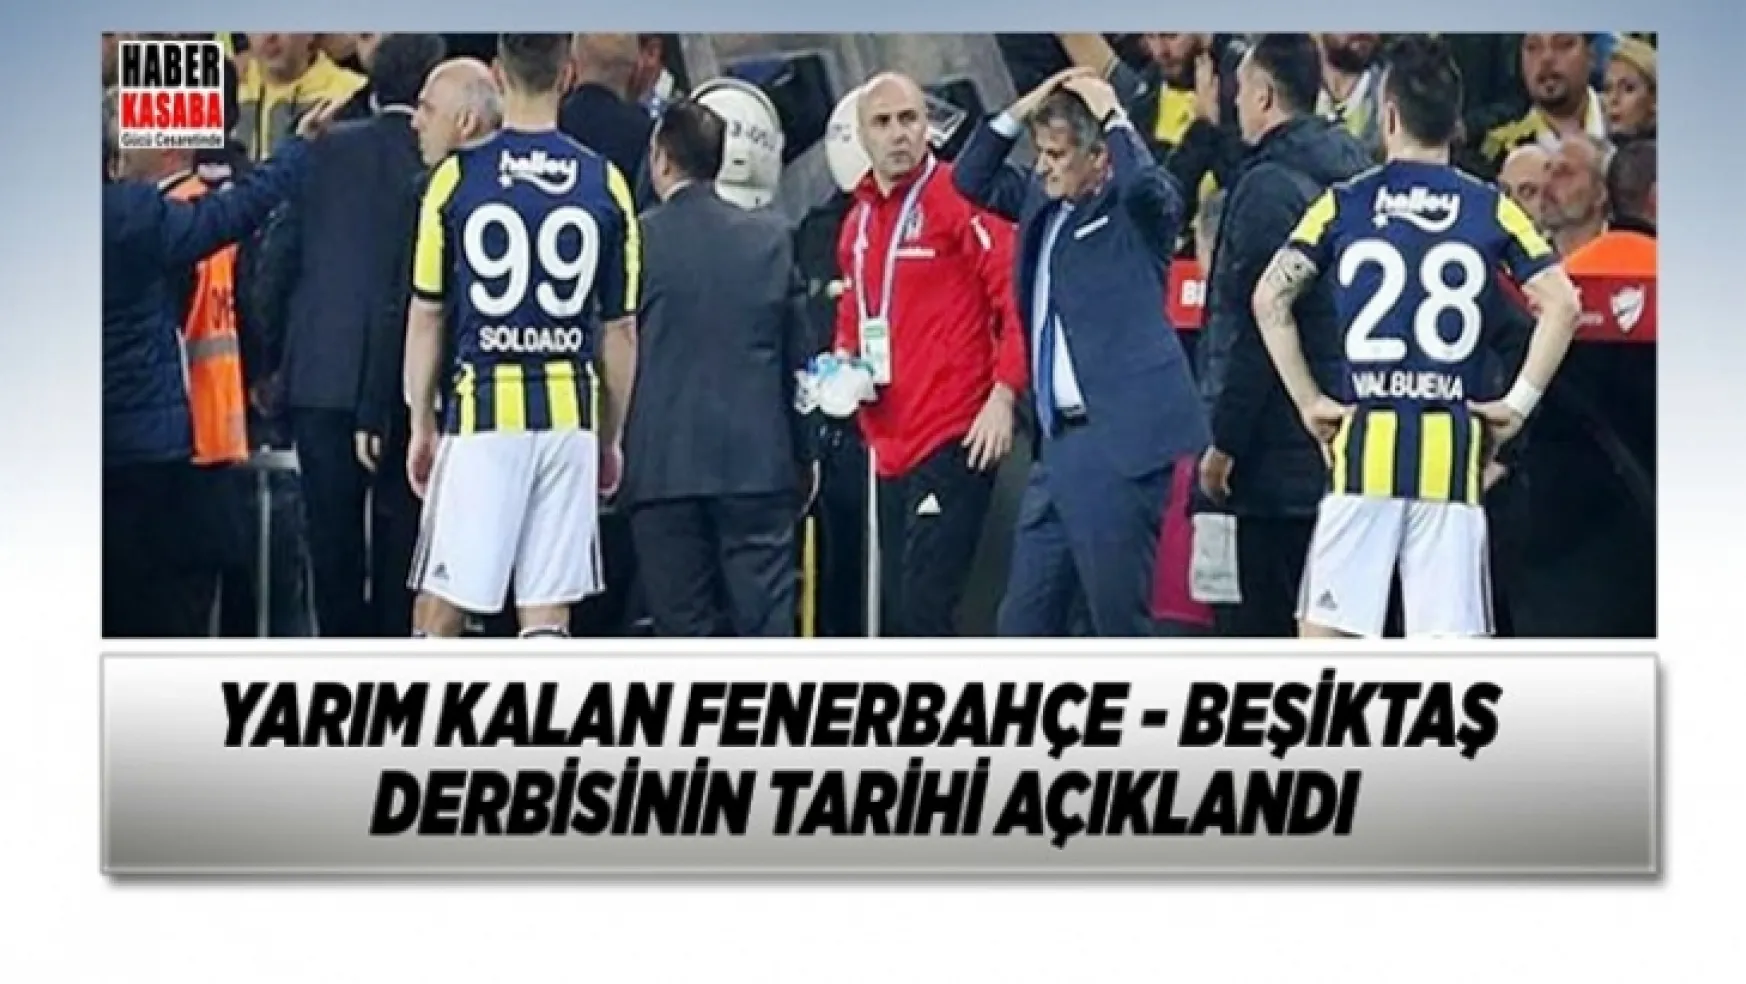 Yarım kalan Beşiktaş - Fenerbahçe derbisinin tarihi açıklandı